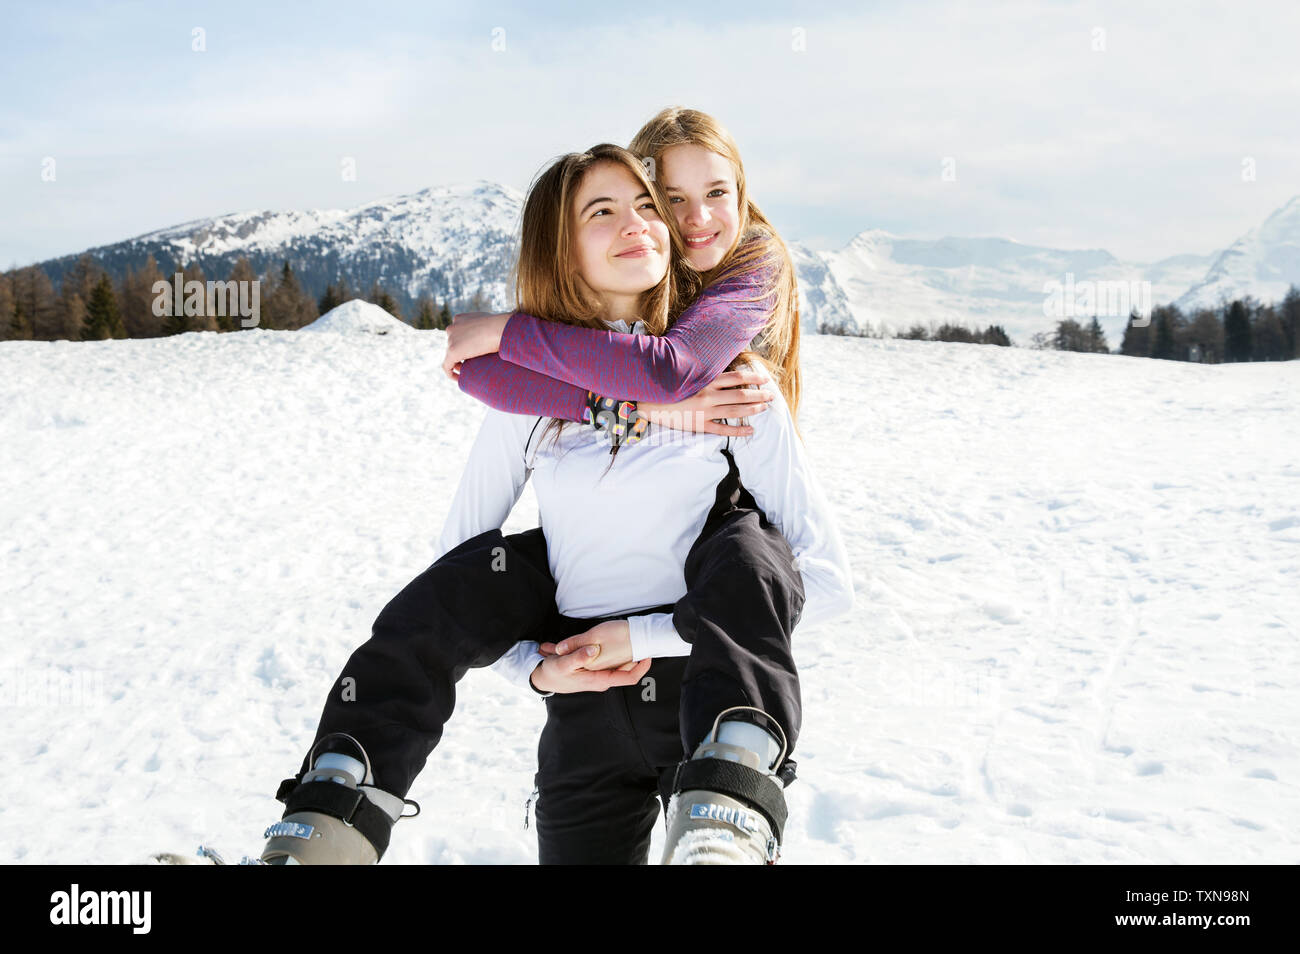 Skieur adolescente se greffer de meilleur ami dans la neige paysage, portrait, Tyrol, Styrie, Autriche Banque D'Images